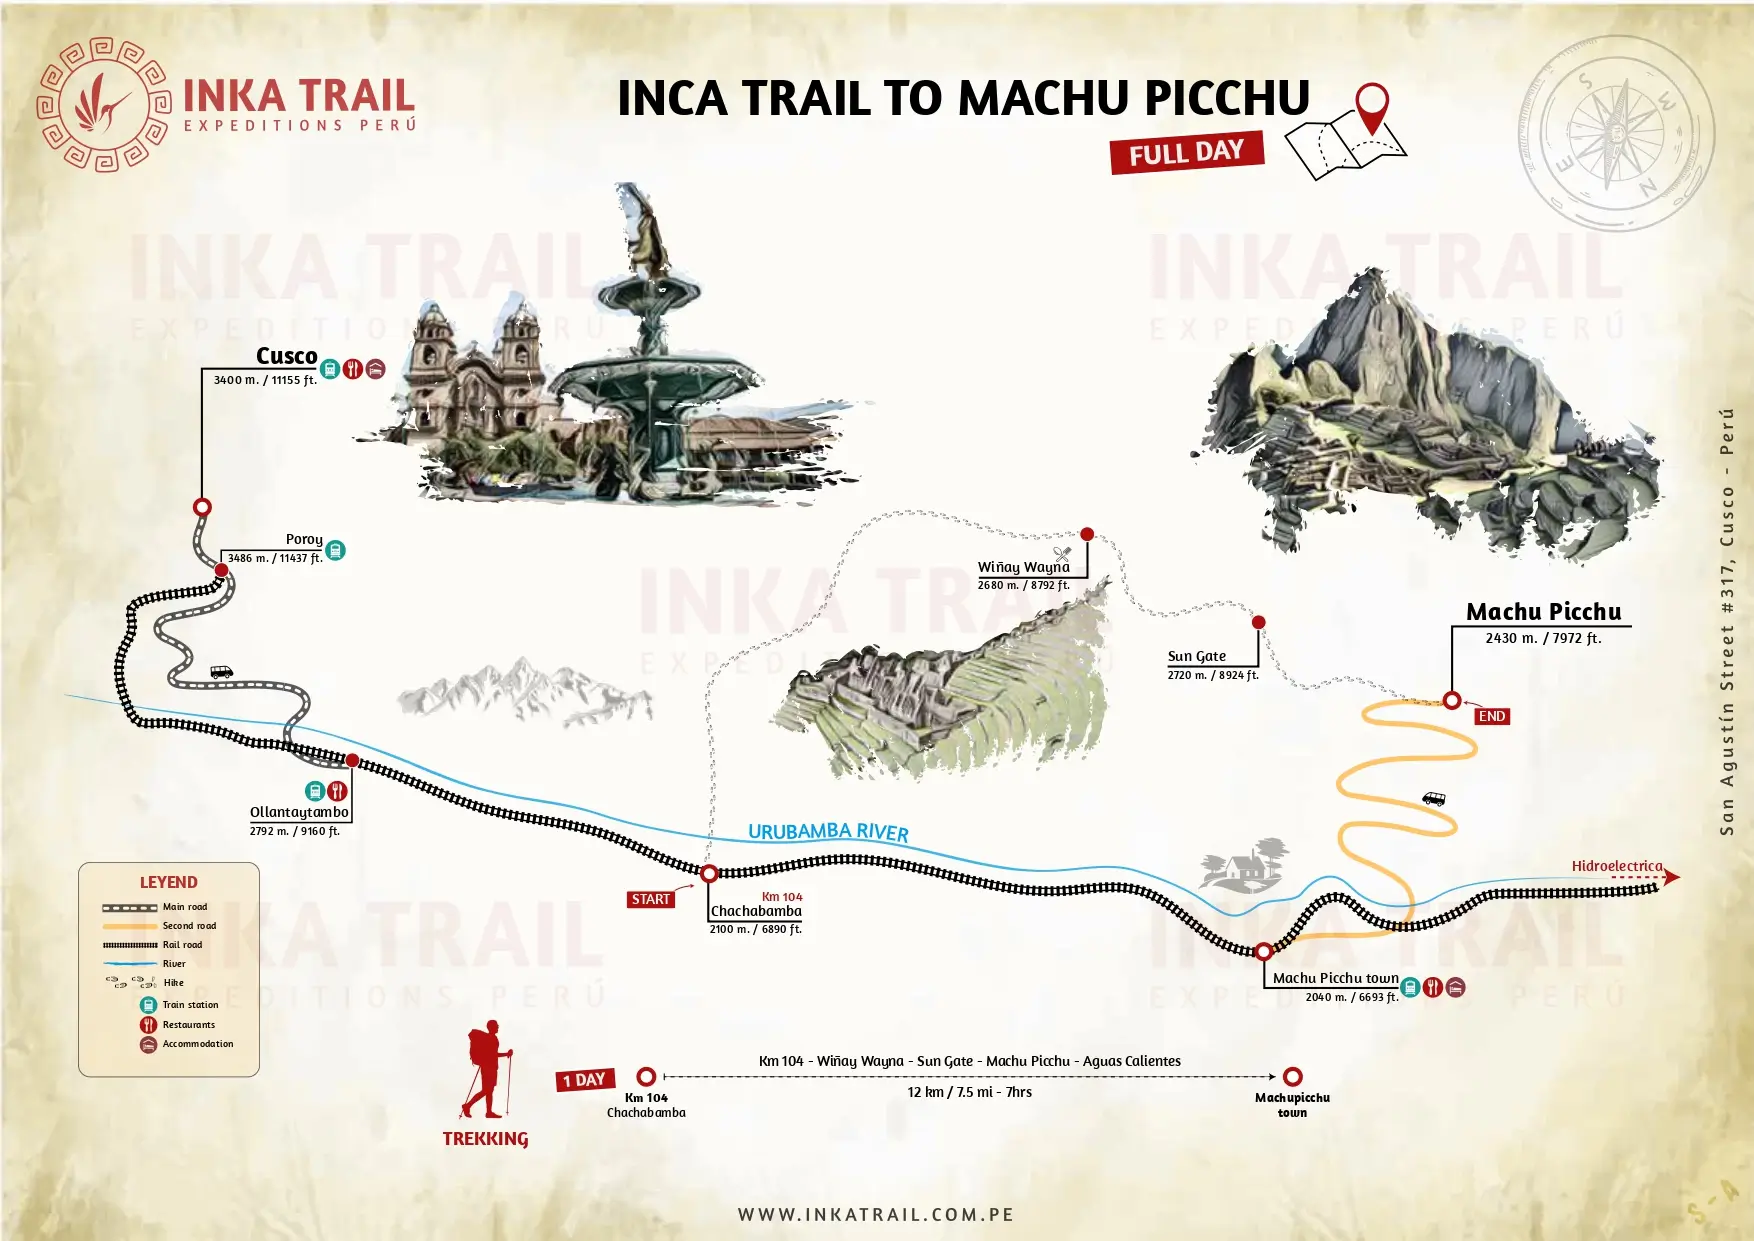  camino inka mapa full day